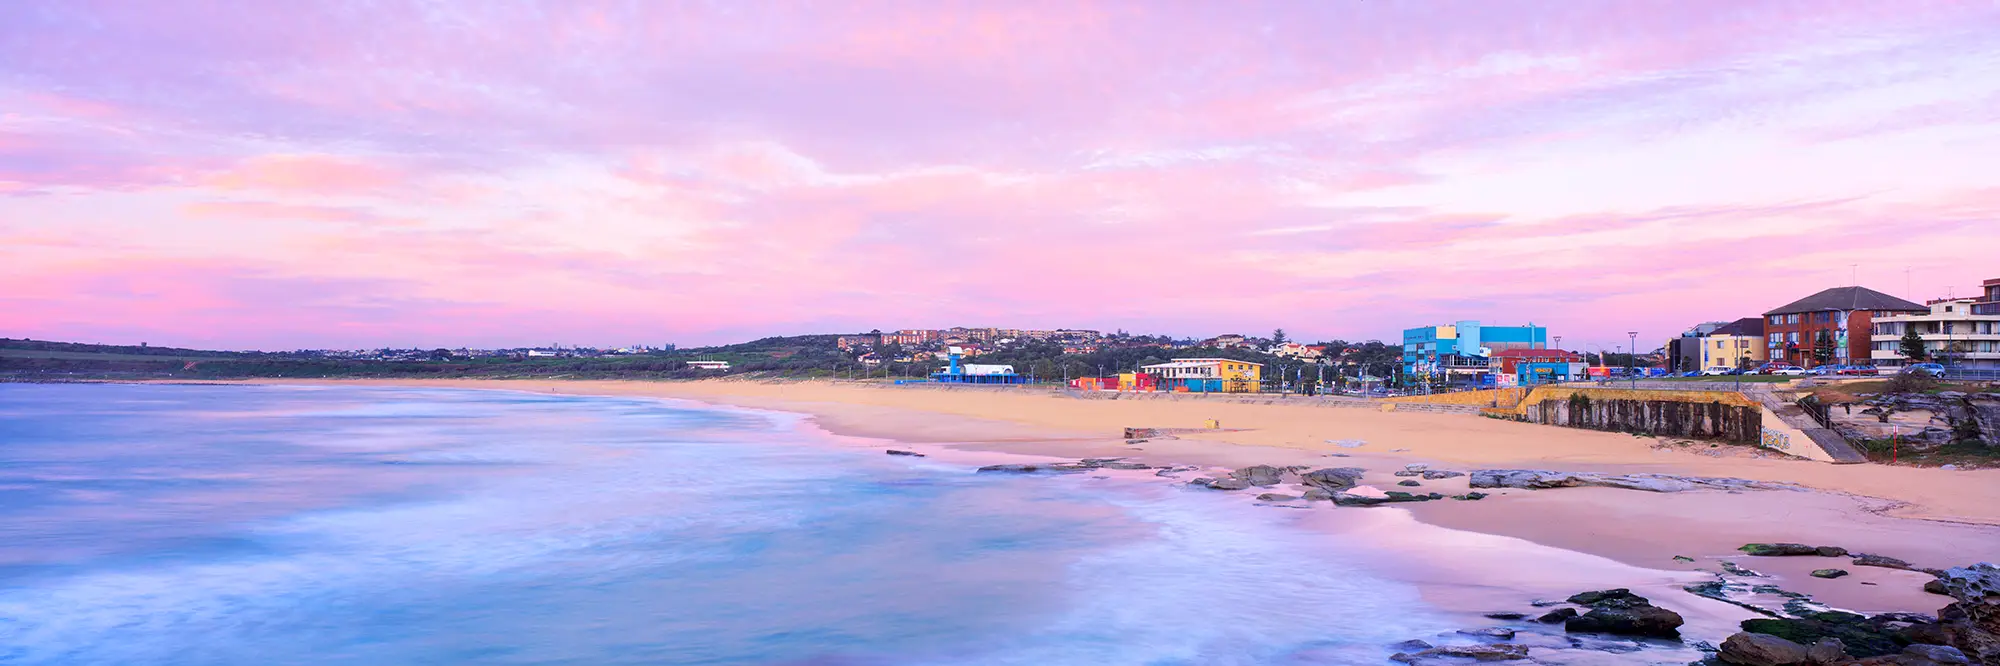 Maroubra Beach Pink Sunrise Panoramic Framed Photo Art Work